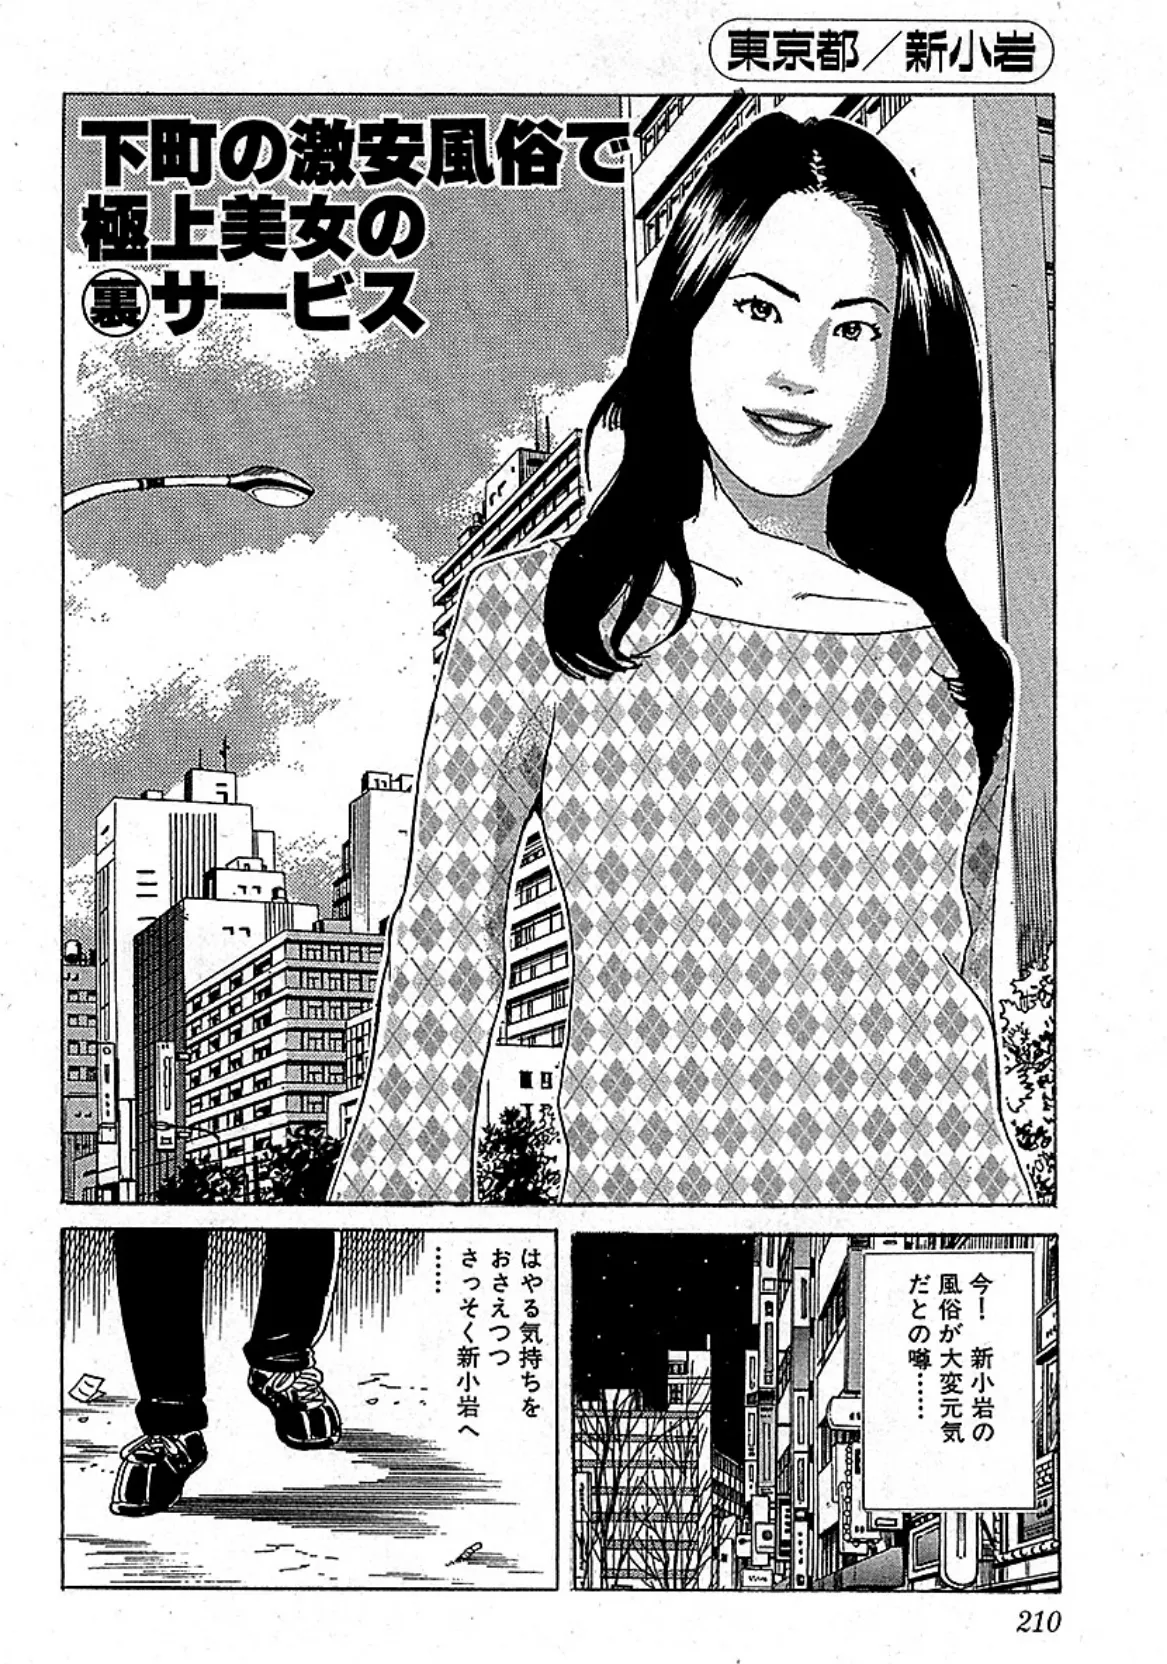 山崎大紀の本当にあったHな話 三行広告スペシャル 分冊版 5 3ページ